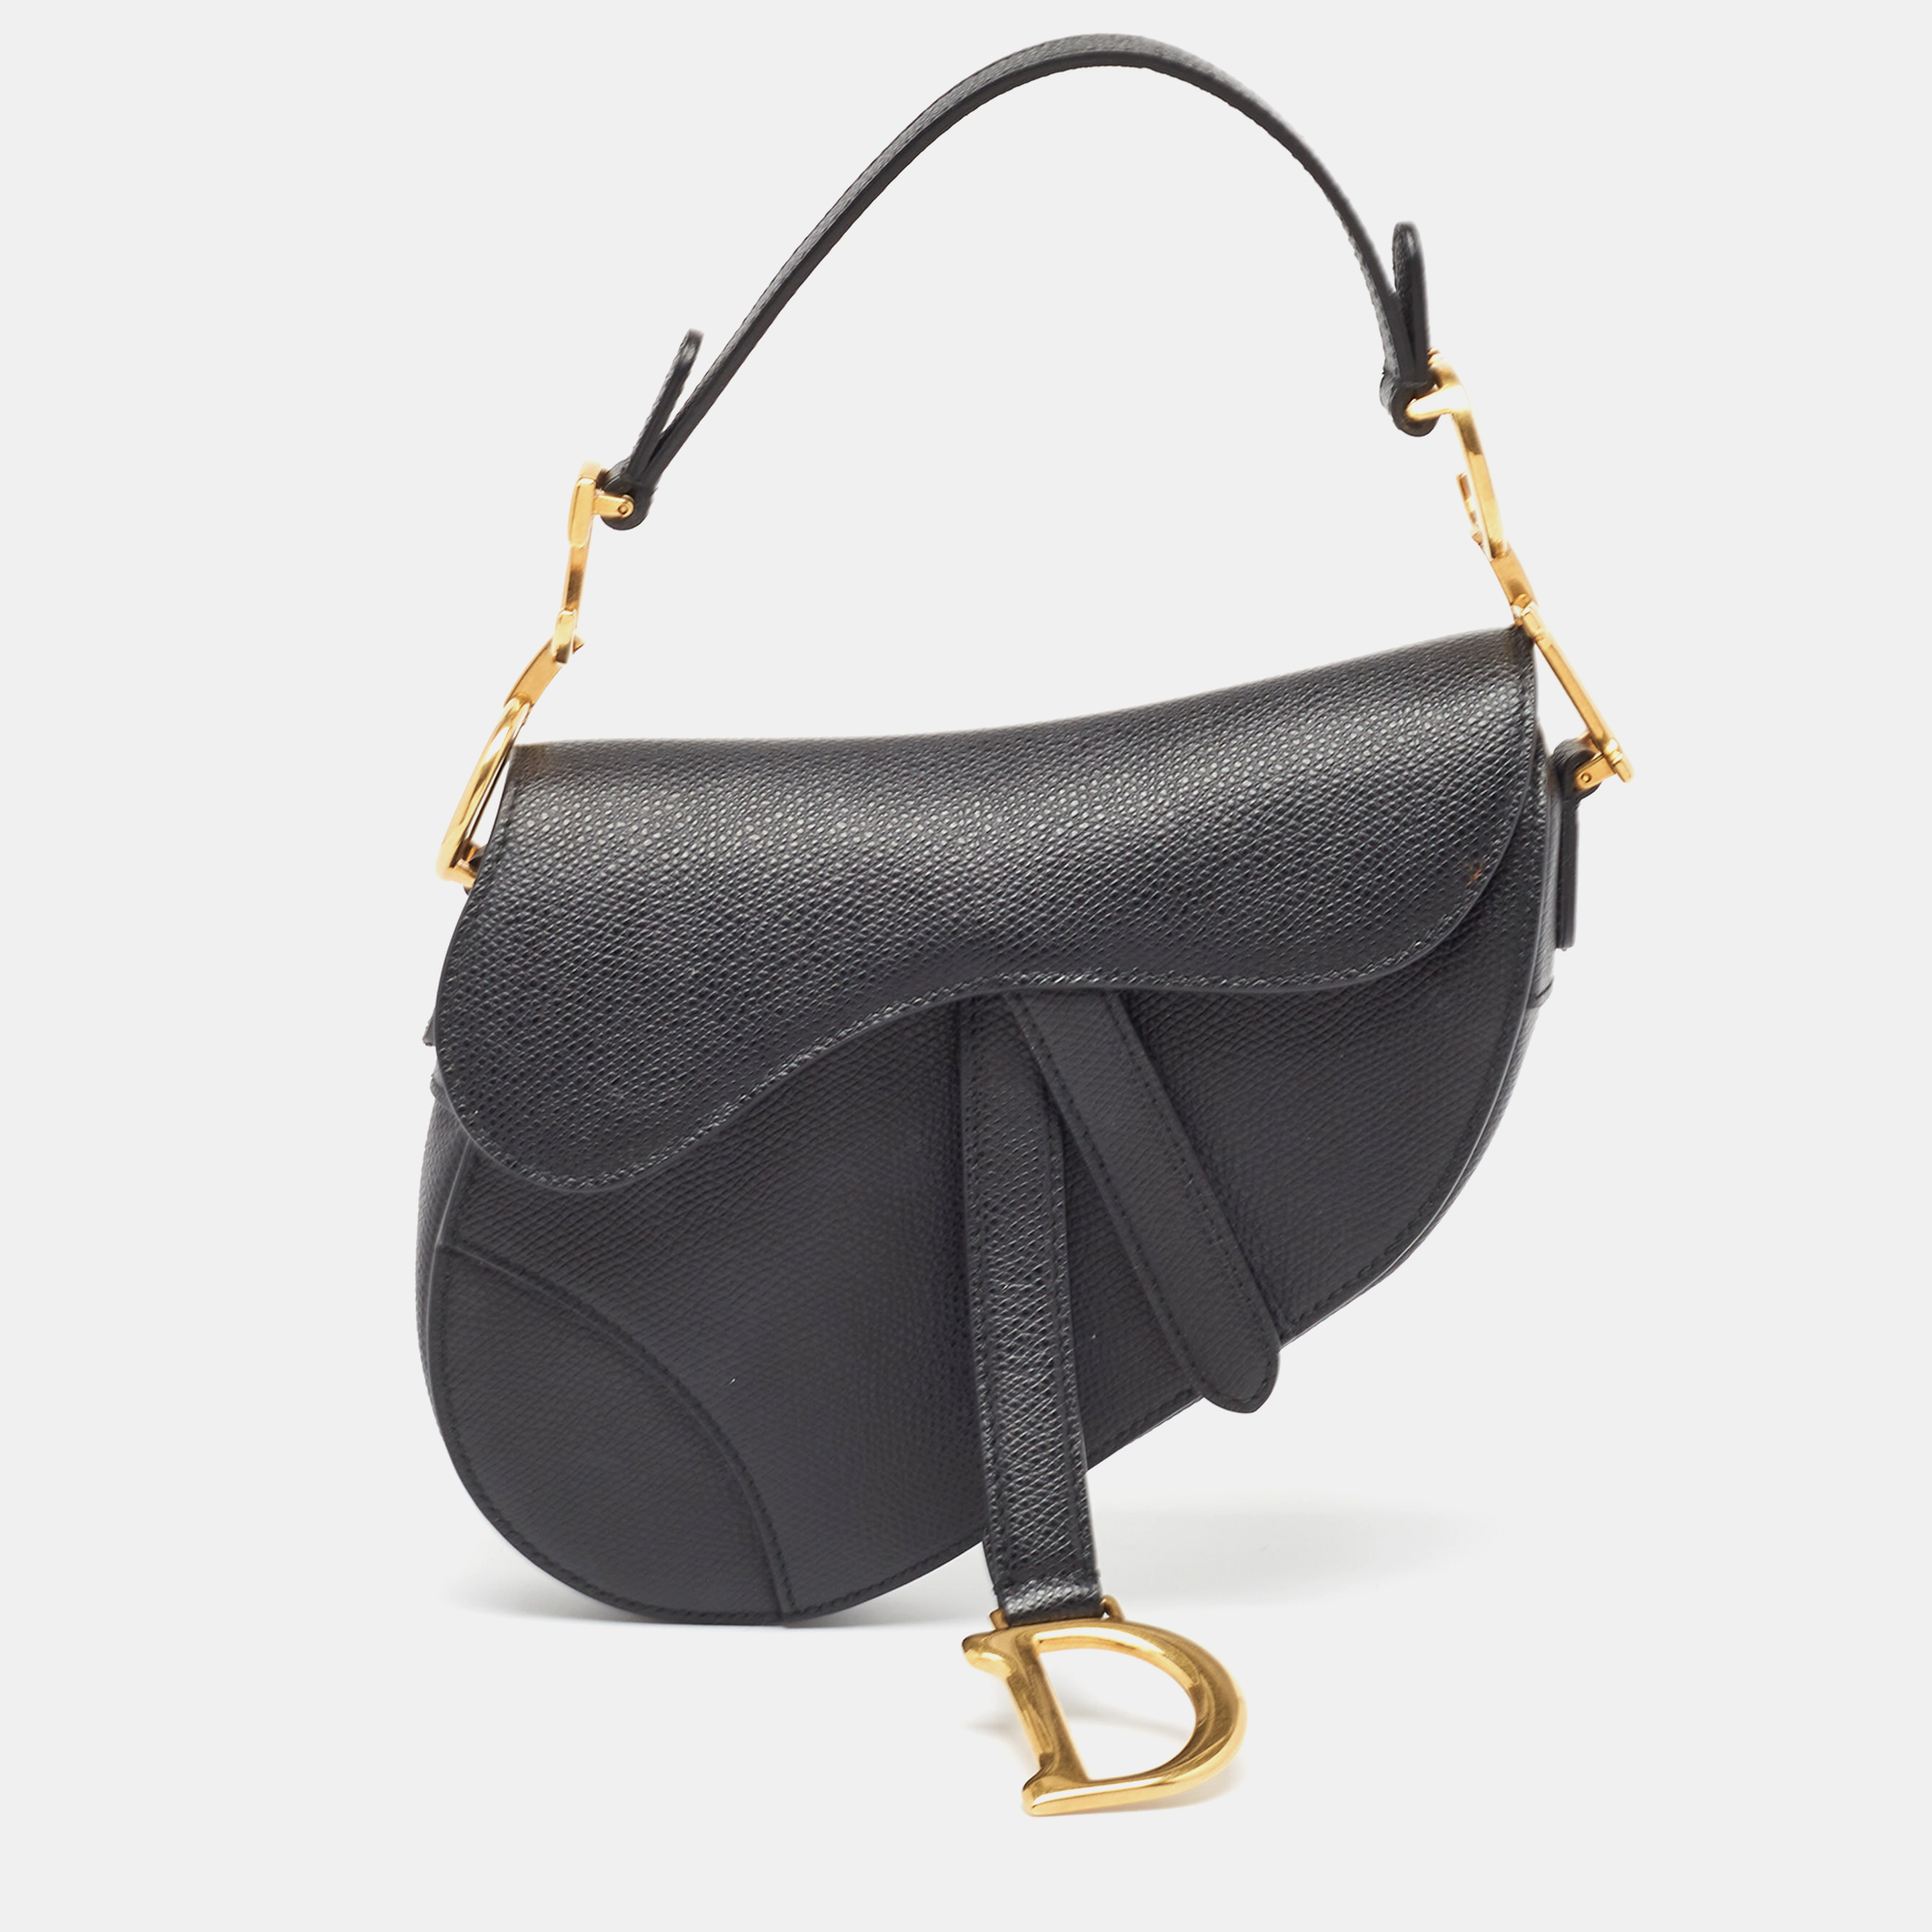 Dior black leather mini saddle bag